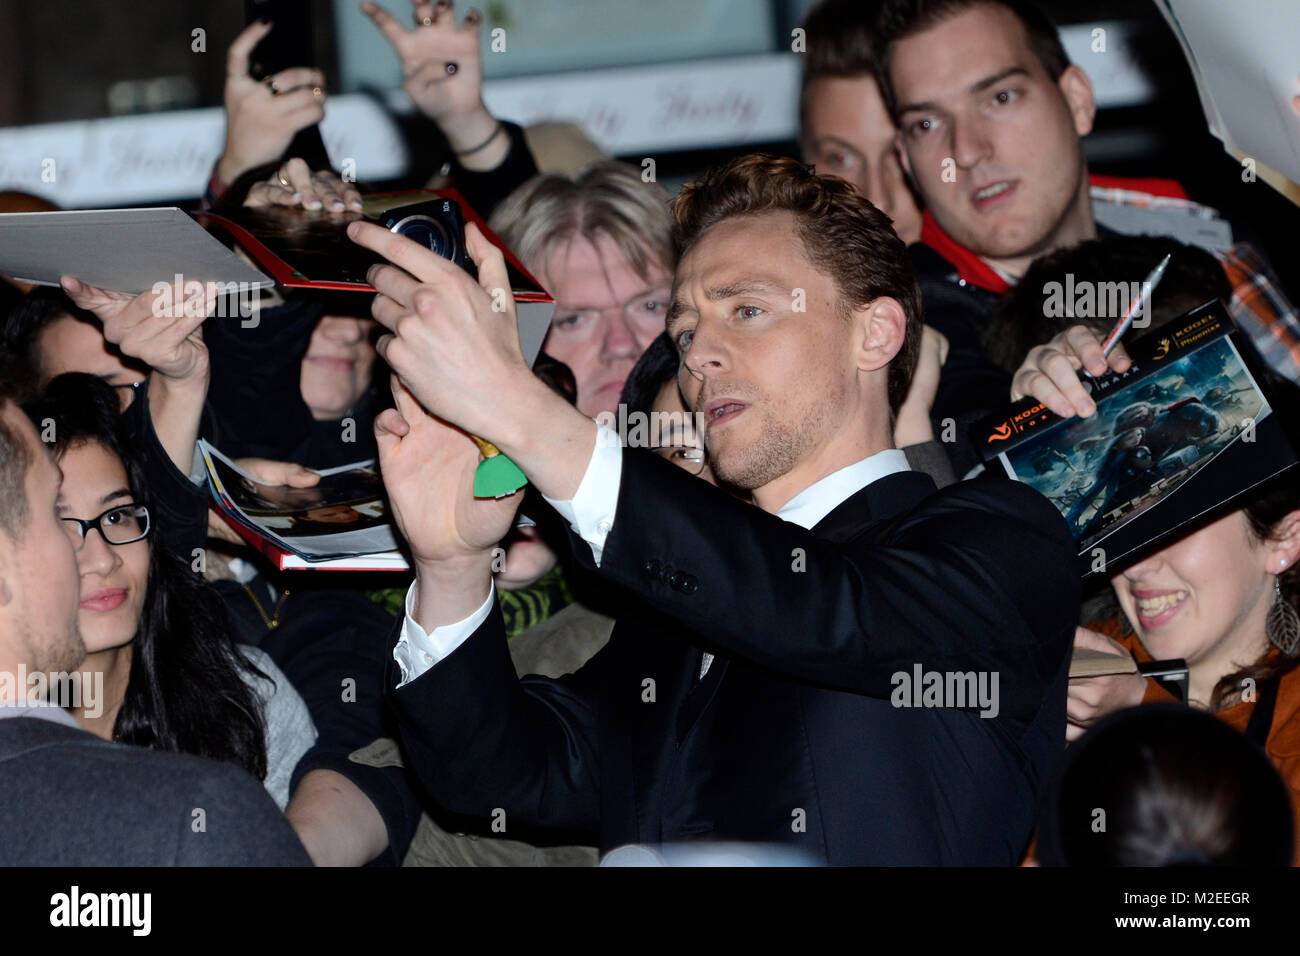 Tom Hiddleston bei der Deutschlandpremiere von "Thor - Il regno oscuro' Cine imStar-Kino im SonyCenter in Berlin am 27.10.2013 Foto Stock